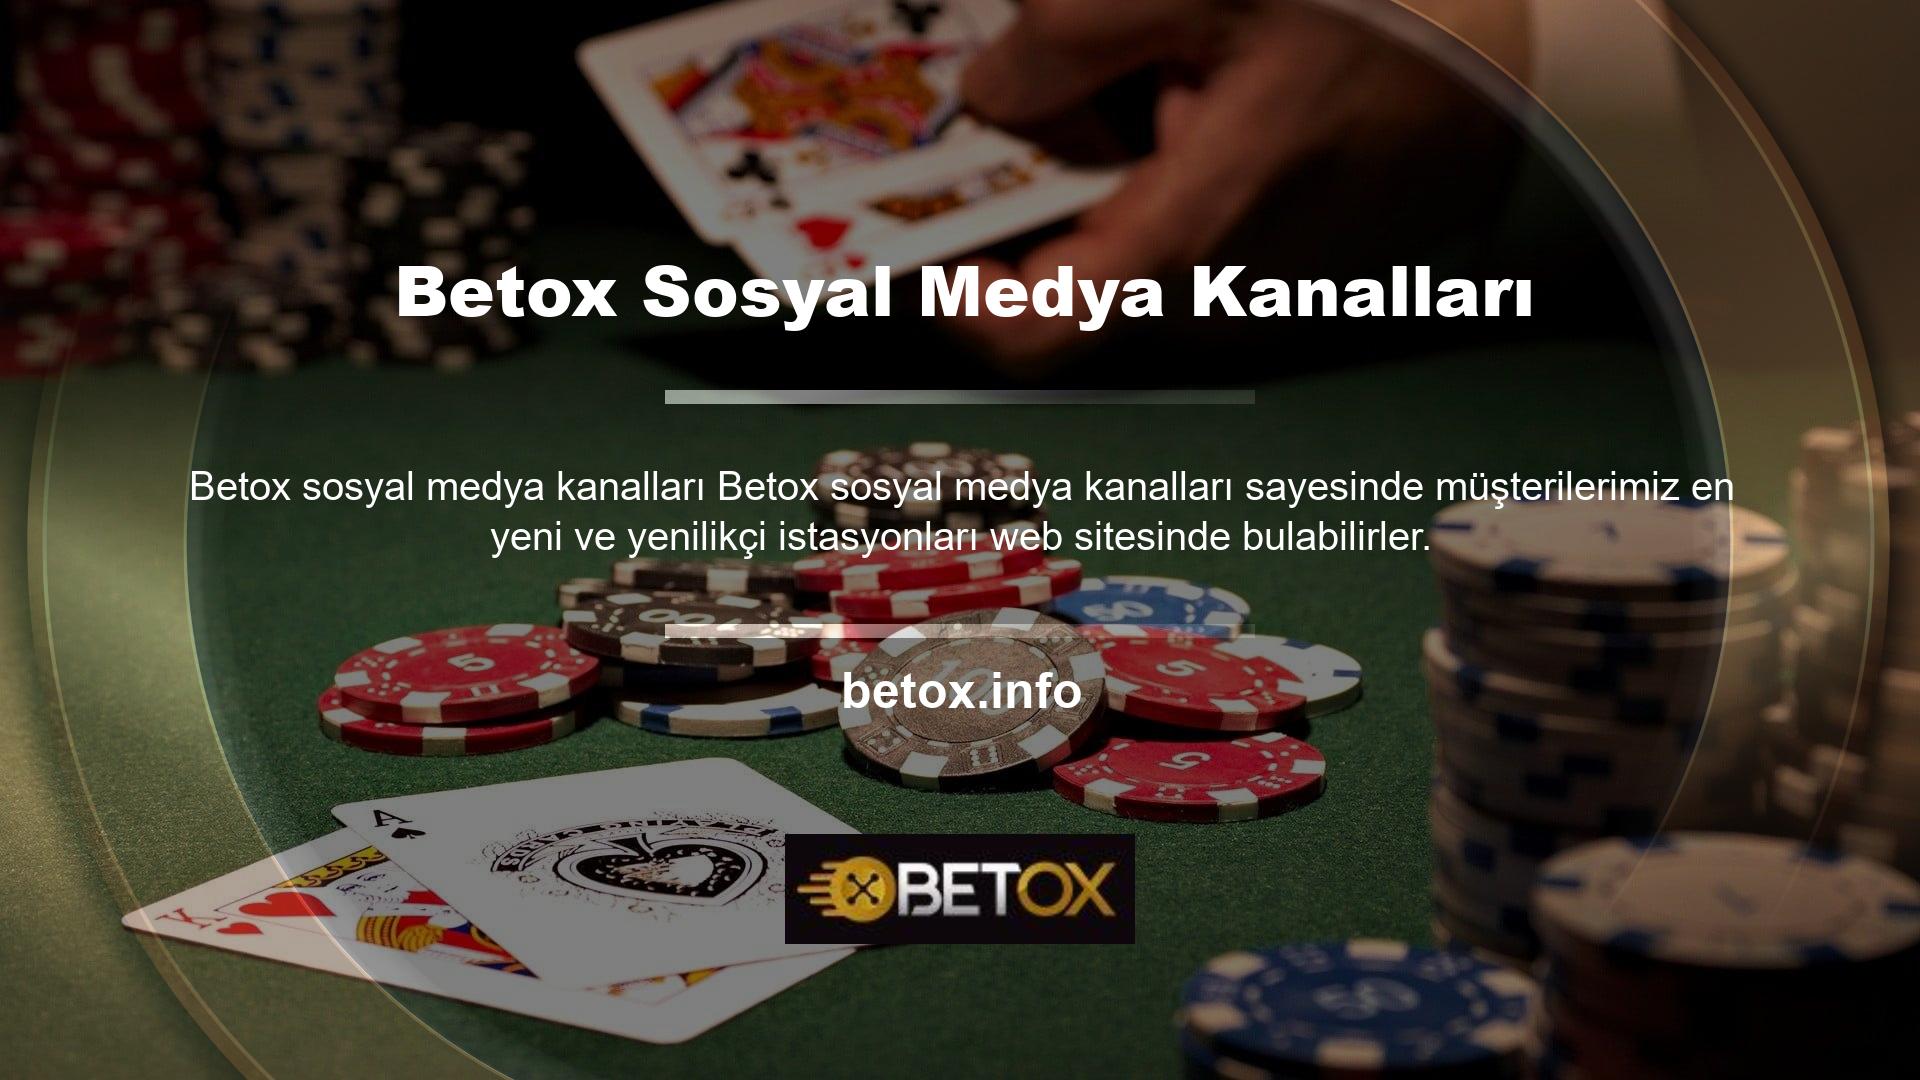 Betox hızlı bir şekilde casino dünyasına girmiş ve aynı iletişim hızına ulaşmıştır